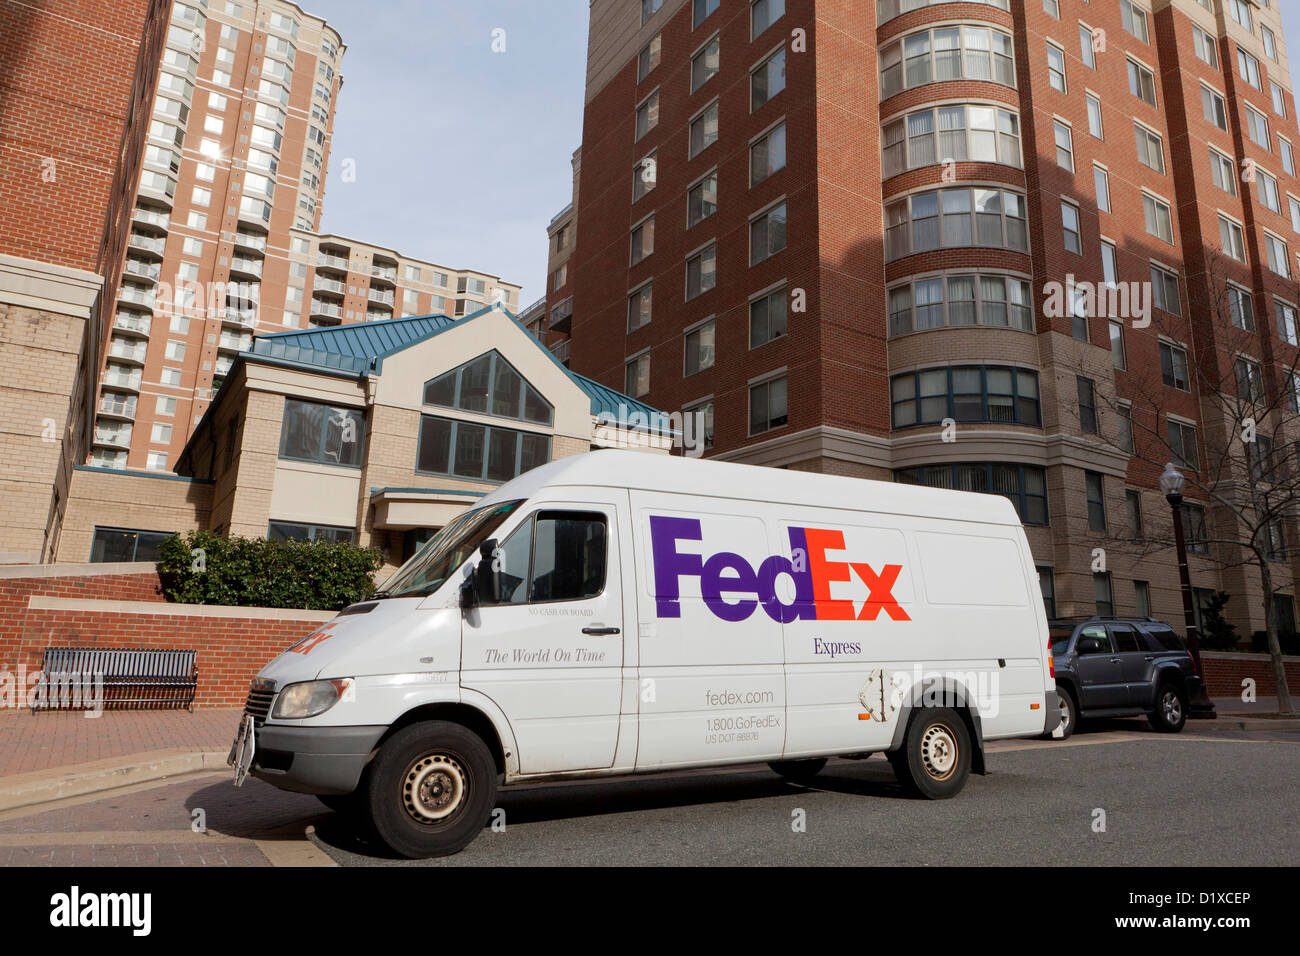 Livraison FedEx van garée en face de l'appartement immeuble - Arlington, Virginia, USA Banque D'Images